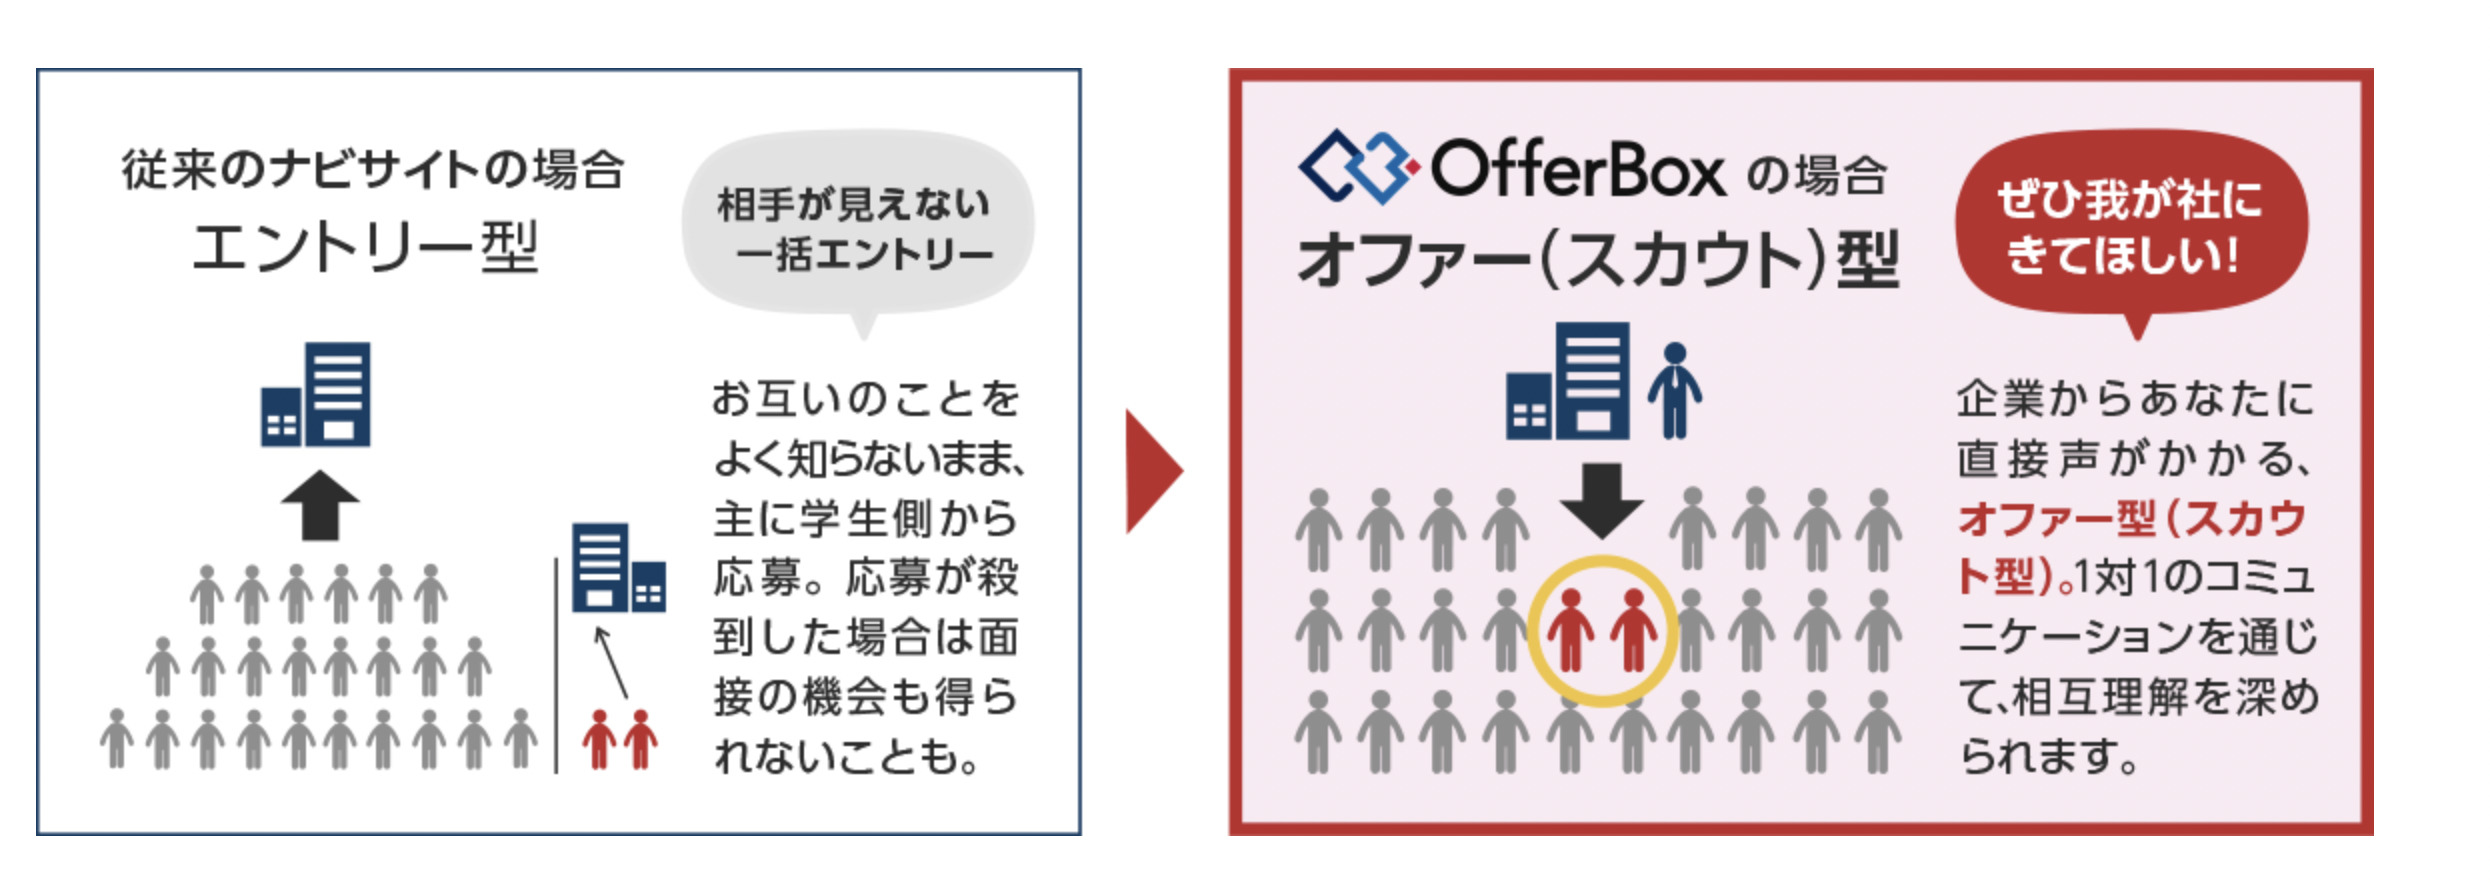 OfferBox　とは